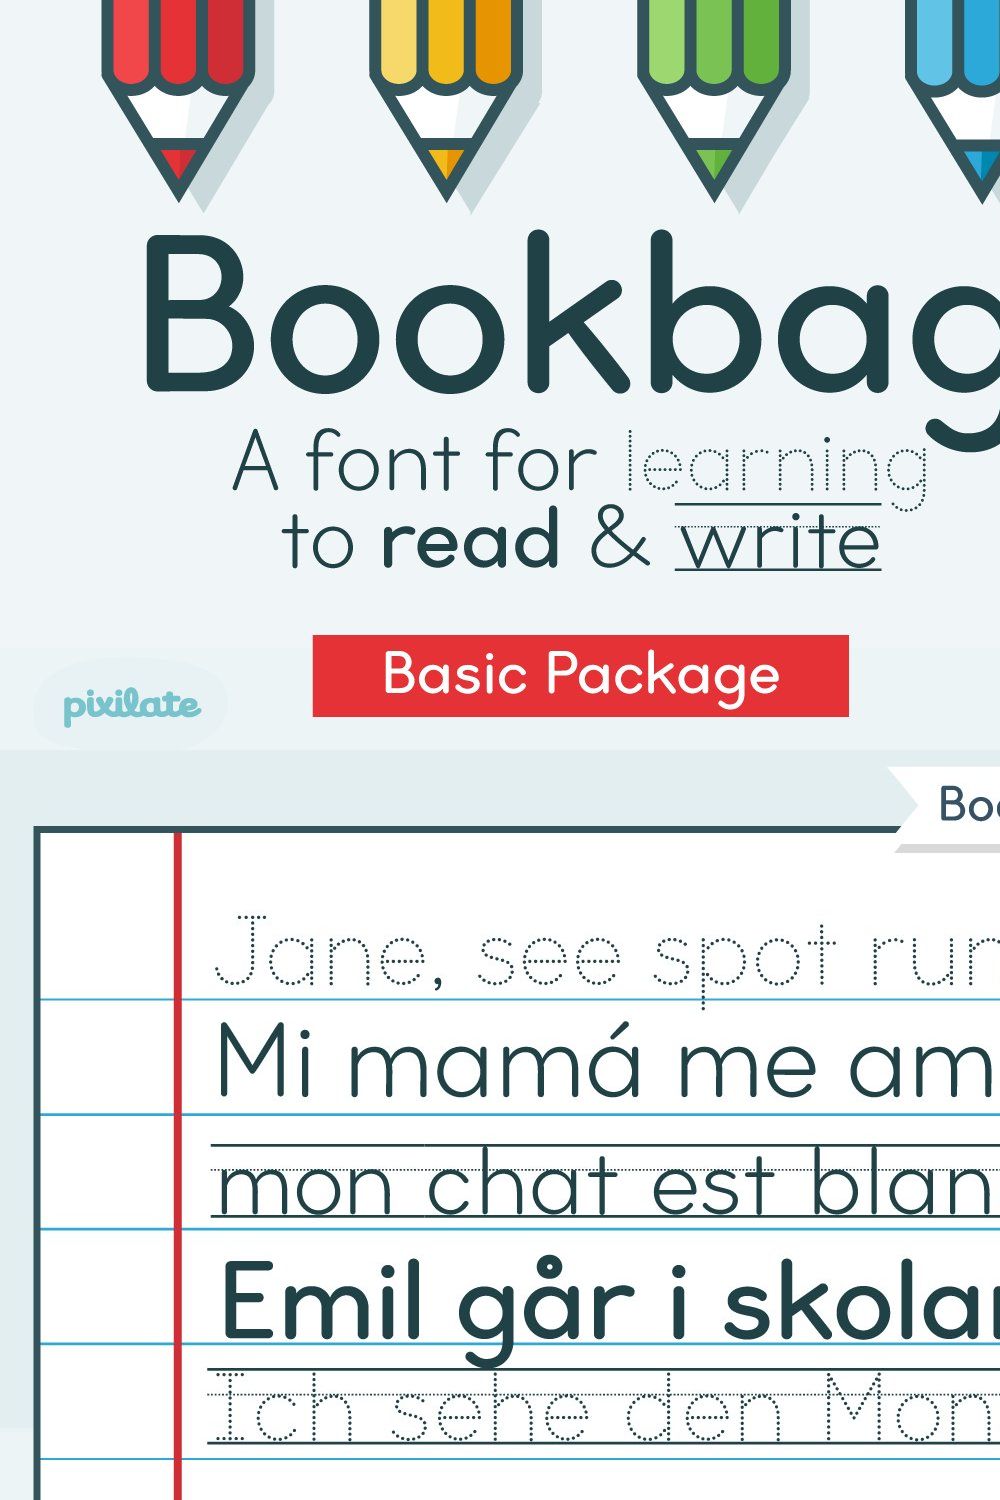 Bookbag school font - Basic pinterest preview image.